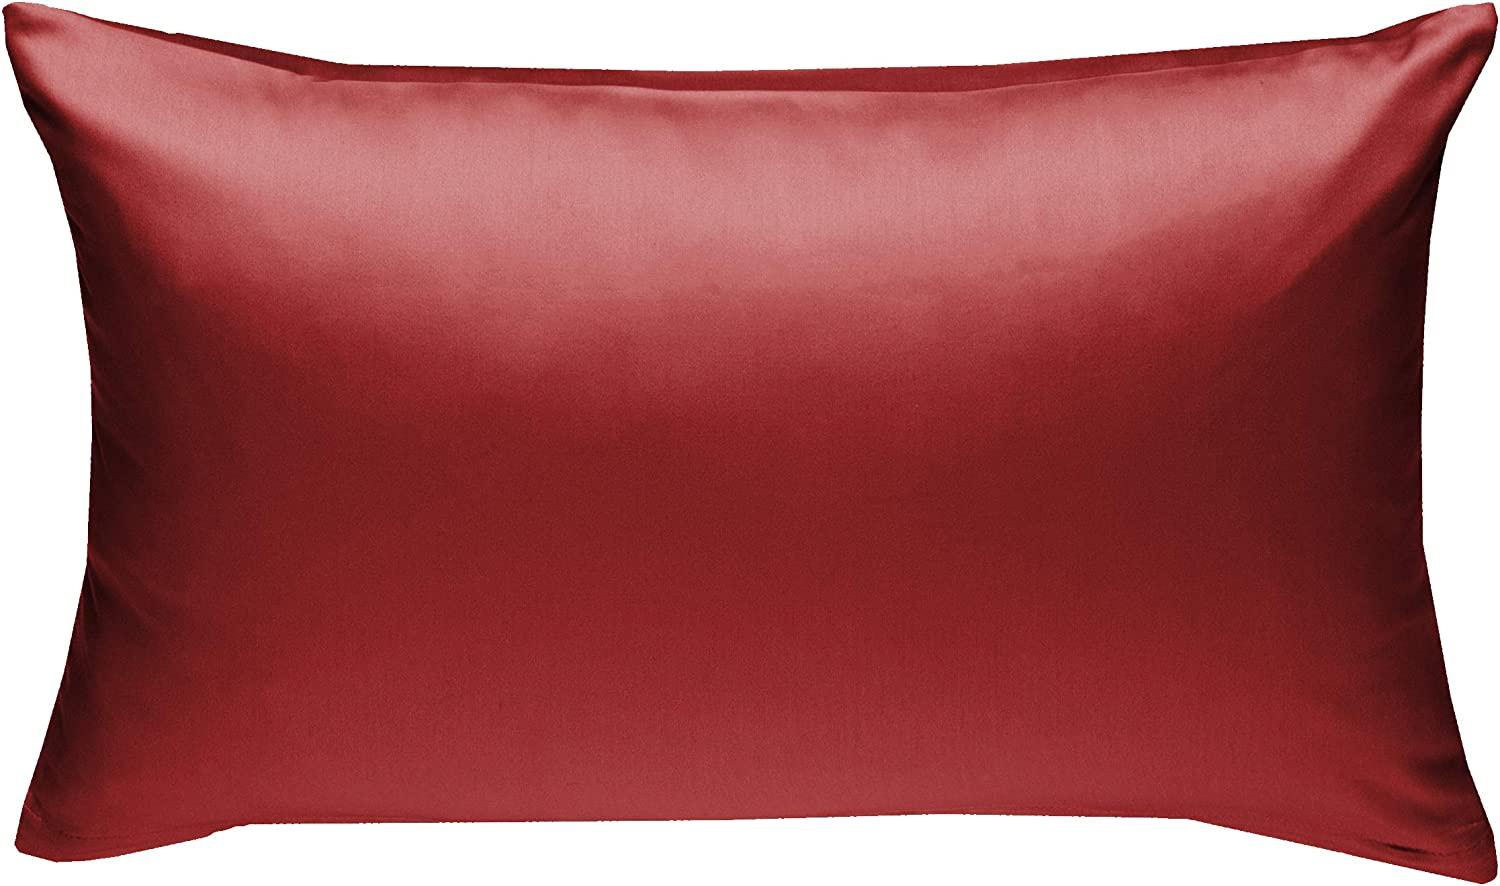 Bettwaesche-mit-Stil Mako-Satin / Baumwollsatin Bettwäsche uni / einfarbig rot Kissenbezug 60x80 cm Bild 1